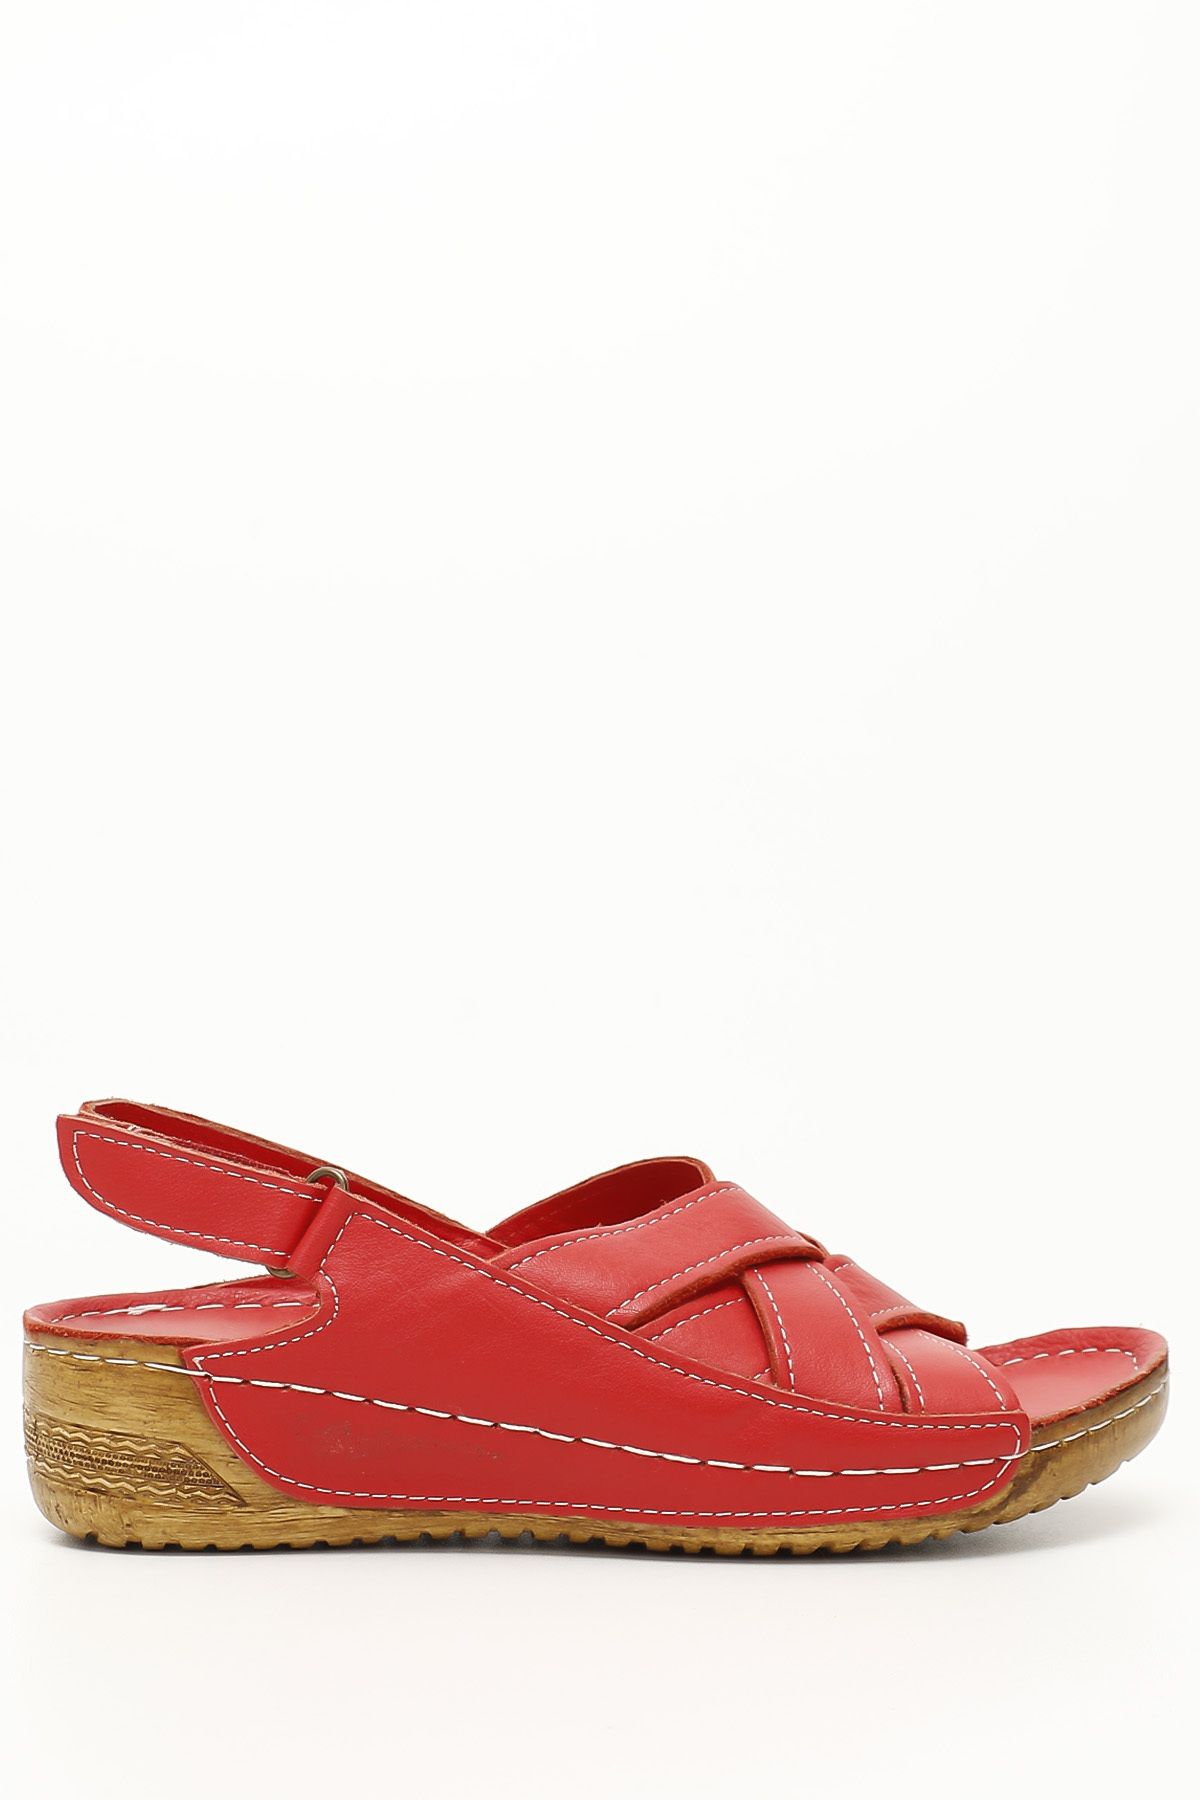 GÖNDERİ(R) Kırmızı Antik Gön Hakiki Deri Kadın Dolgu Taban Sandalet 42310